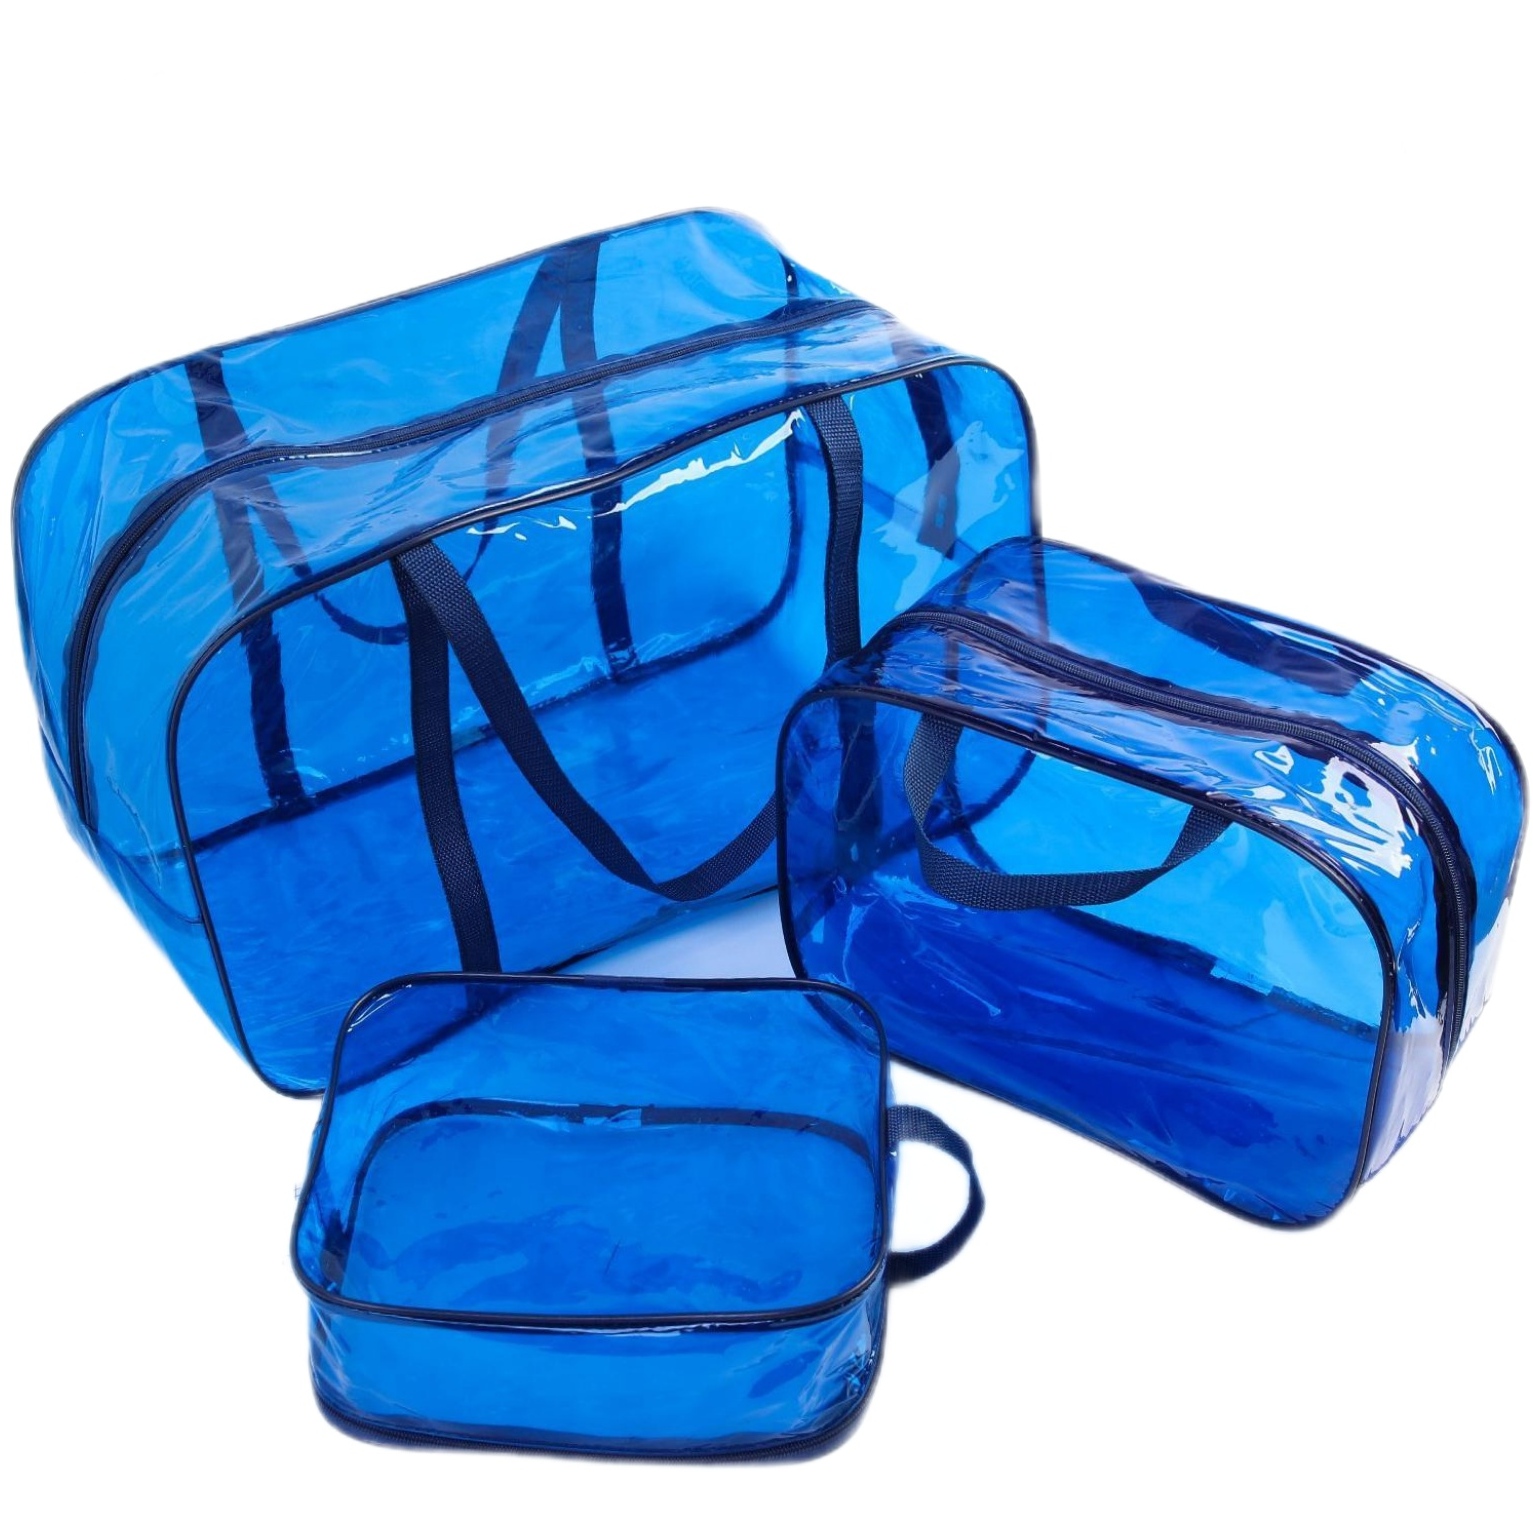 Набор сумок в роддом, 3 шт., цветной ПВХ, цвет синий 4927640